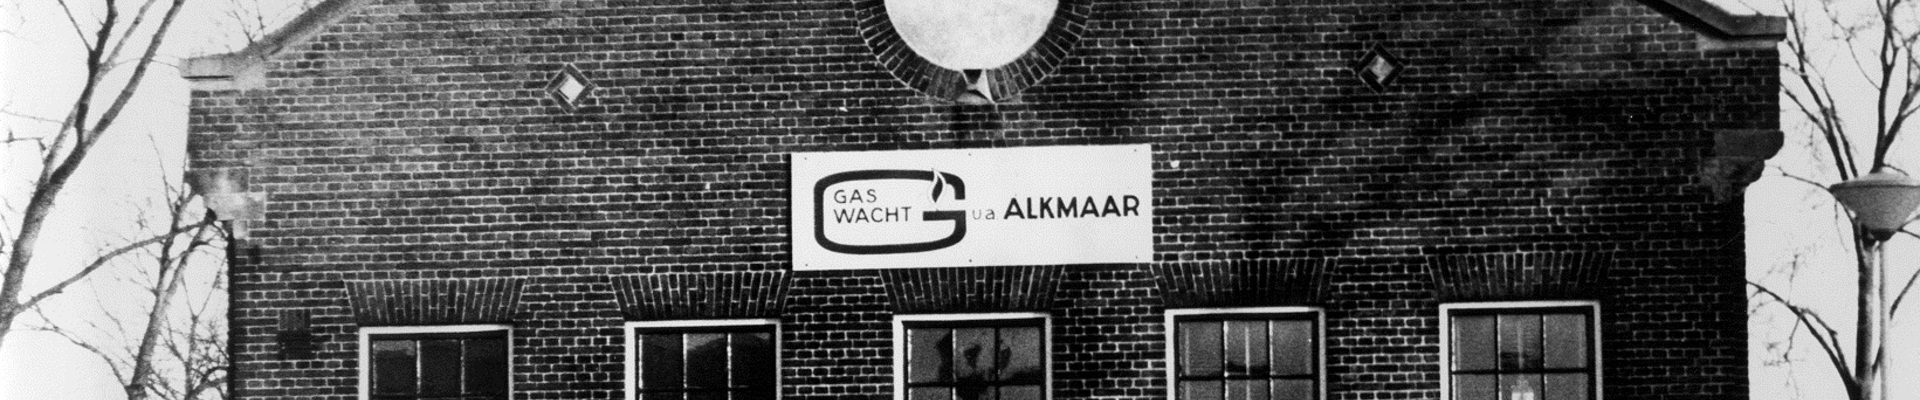 Het oude pand in Alkmaar